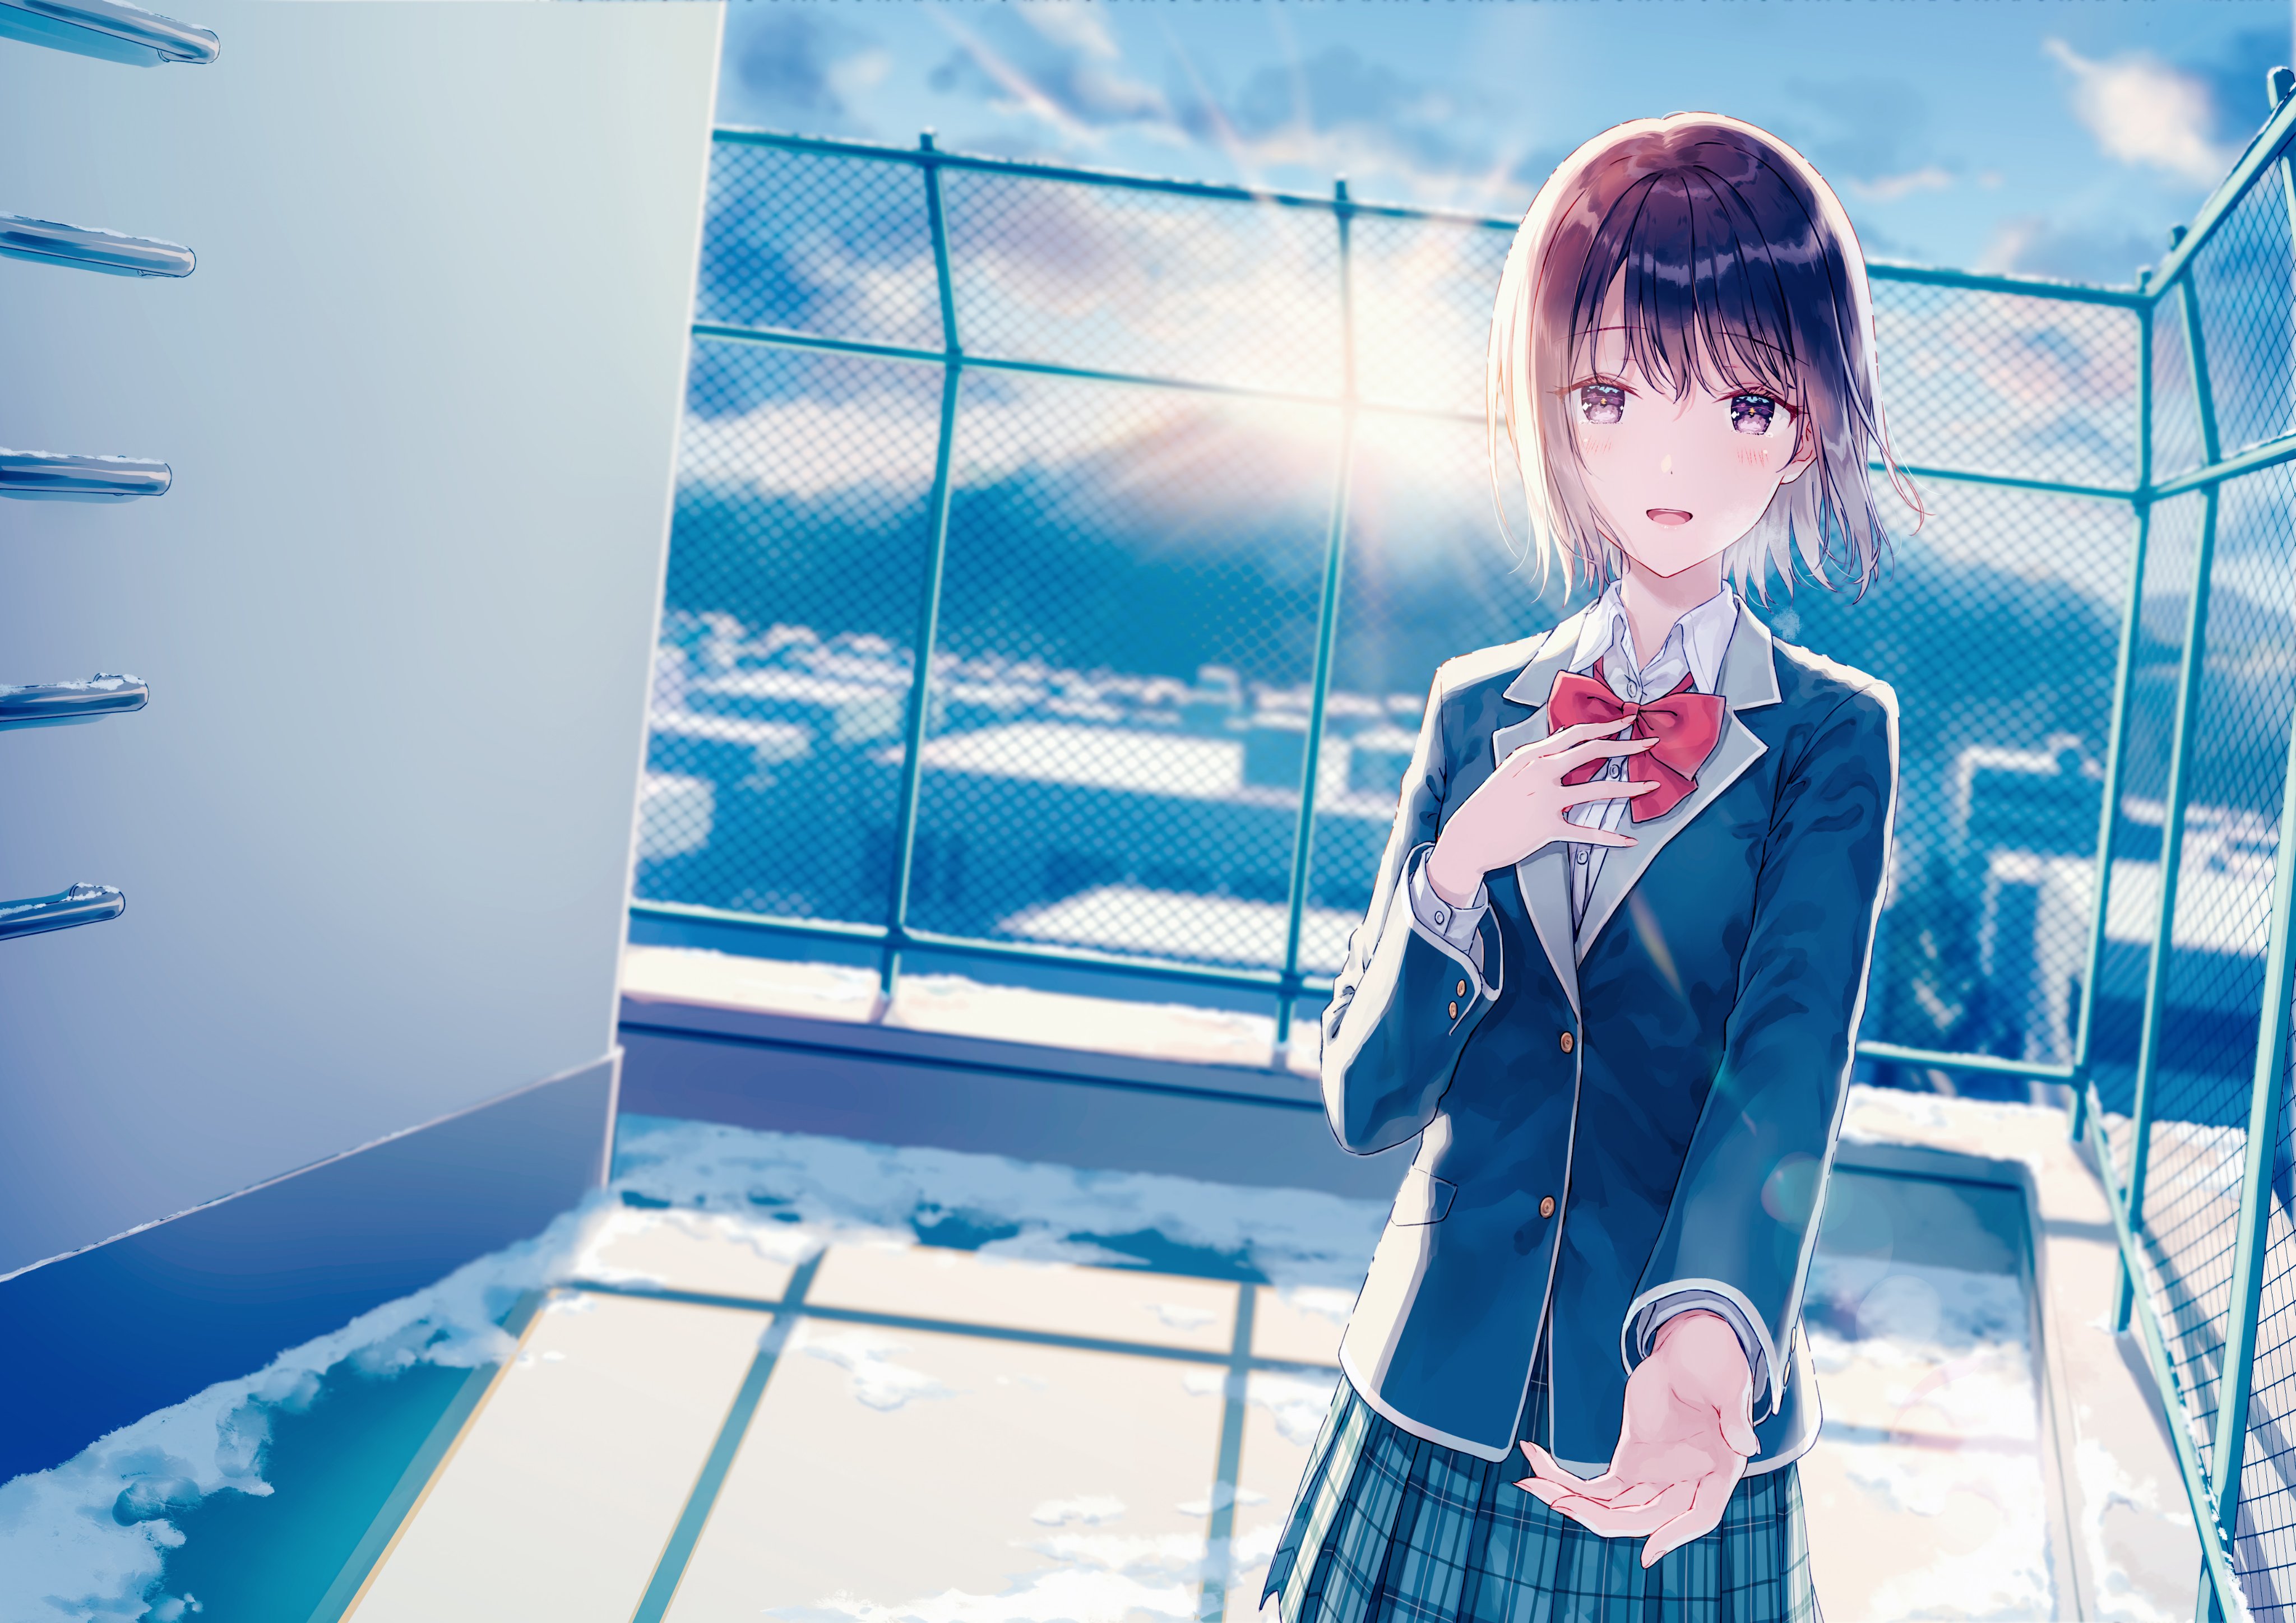 Hiten Anime Girls Schoolgirl School Uniform Rooftops 4096x2896